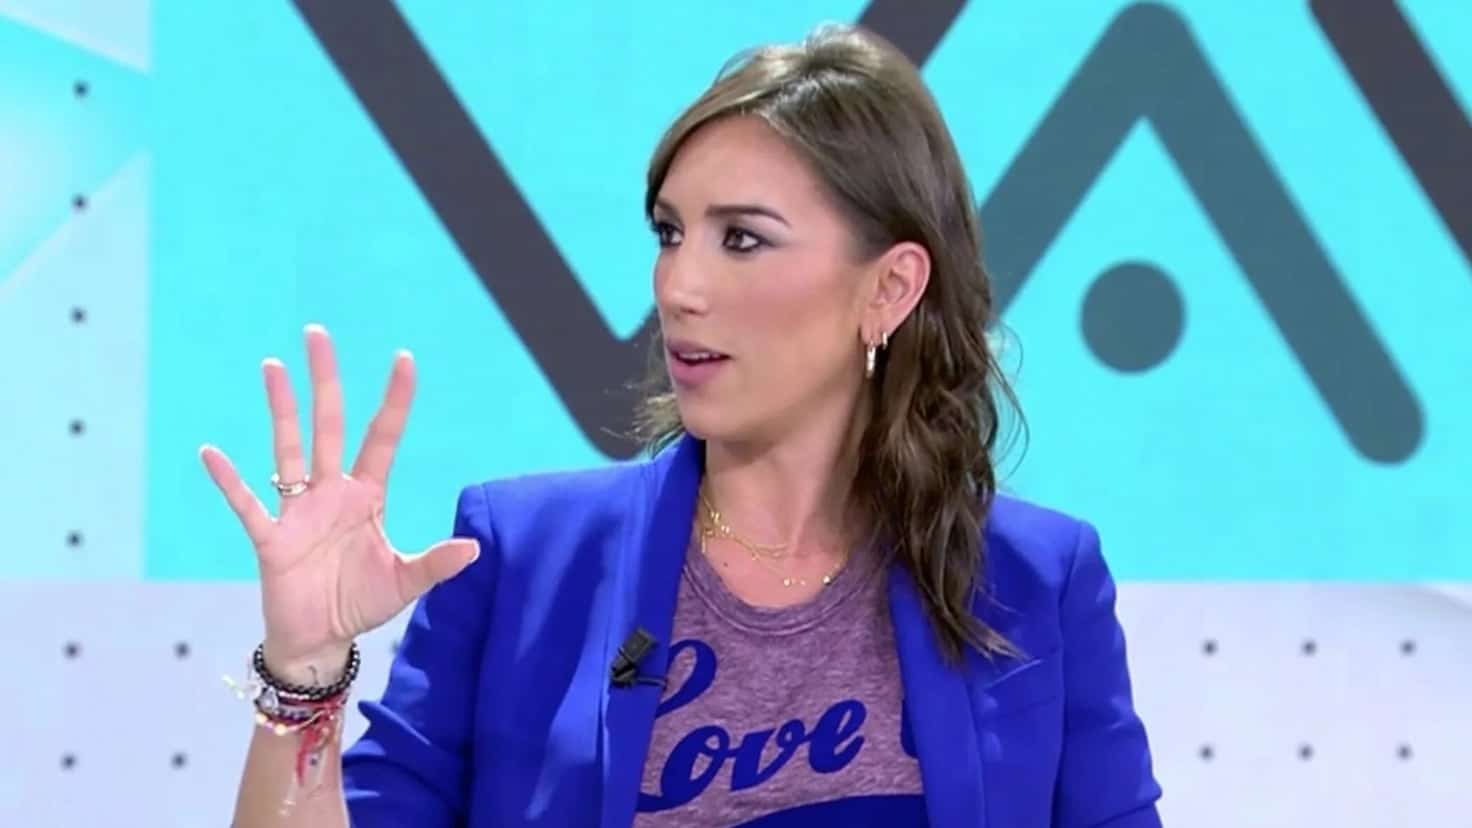 Patricia Pardo critica a Mediaset despues de contratar a presentadora